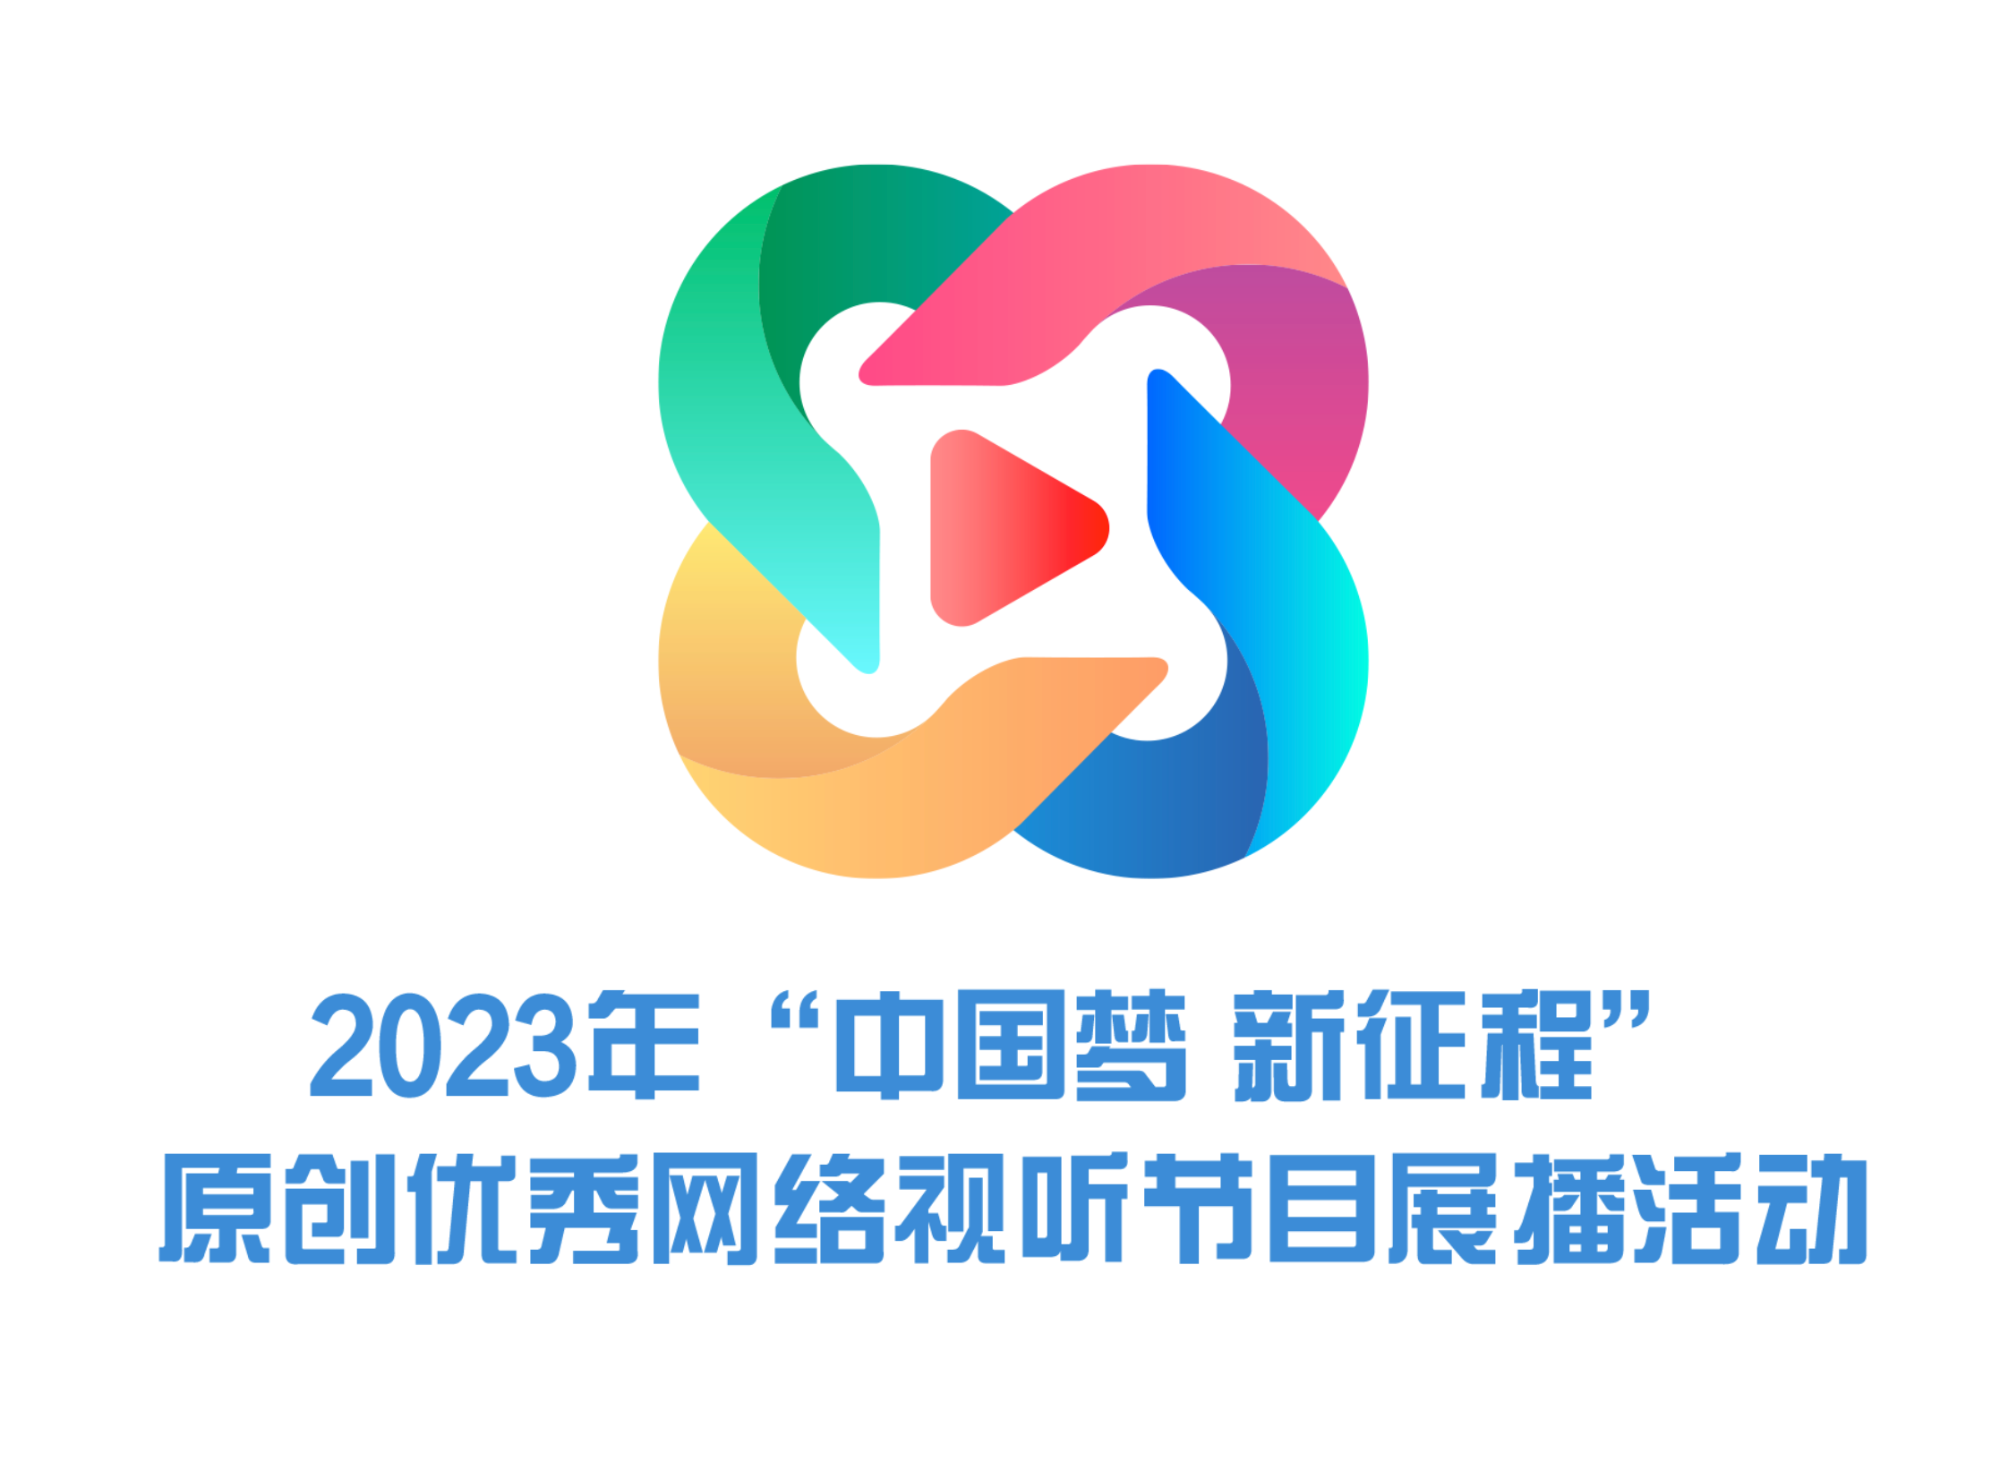 2023年“弘扬社会主义核心价值观 共筑中国梦”主题原创网络视听节目展播